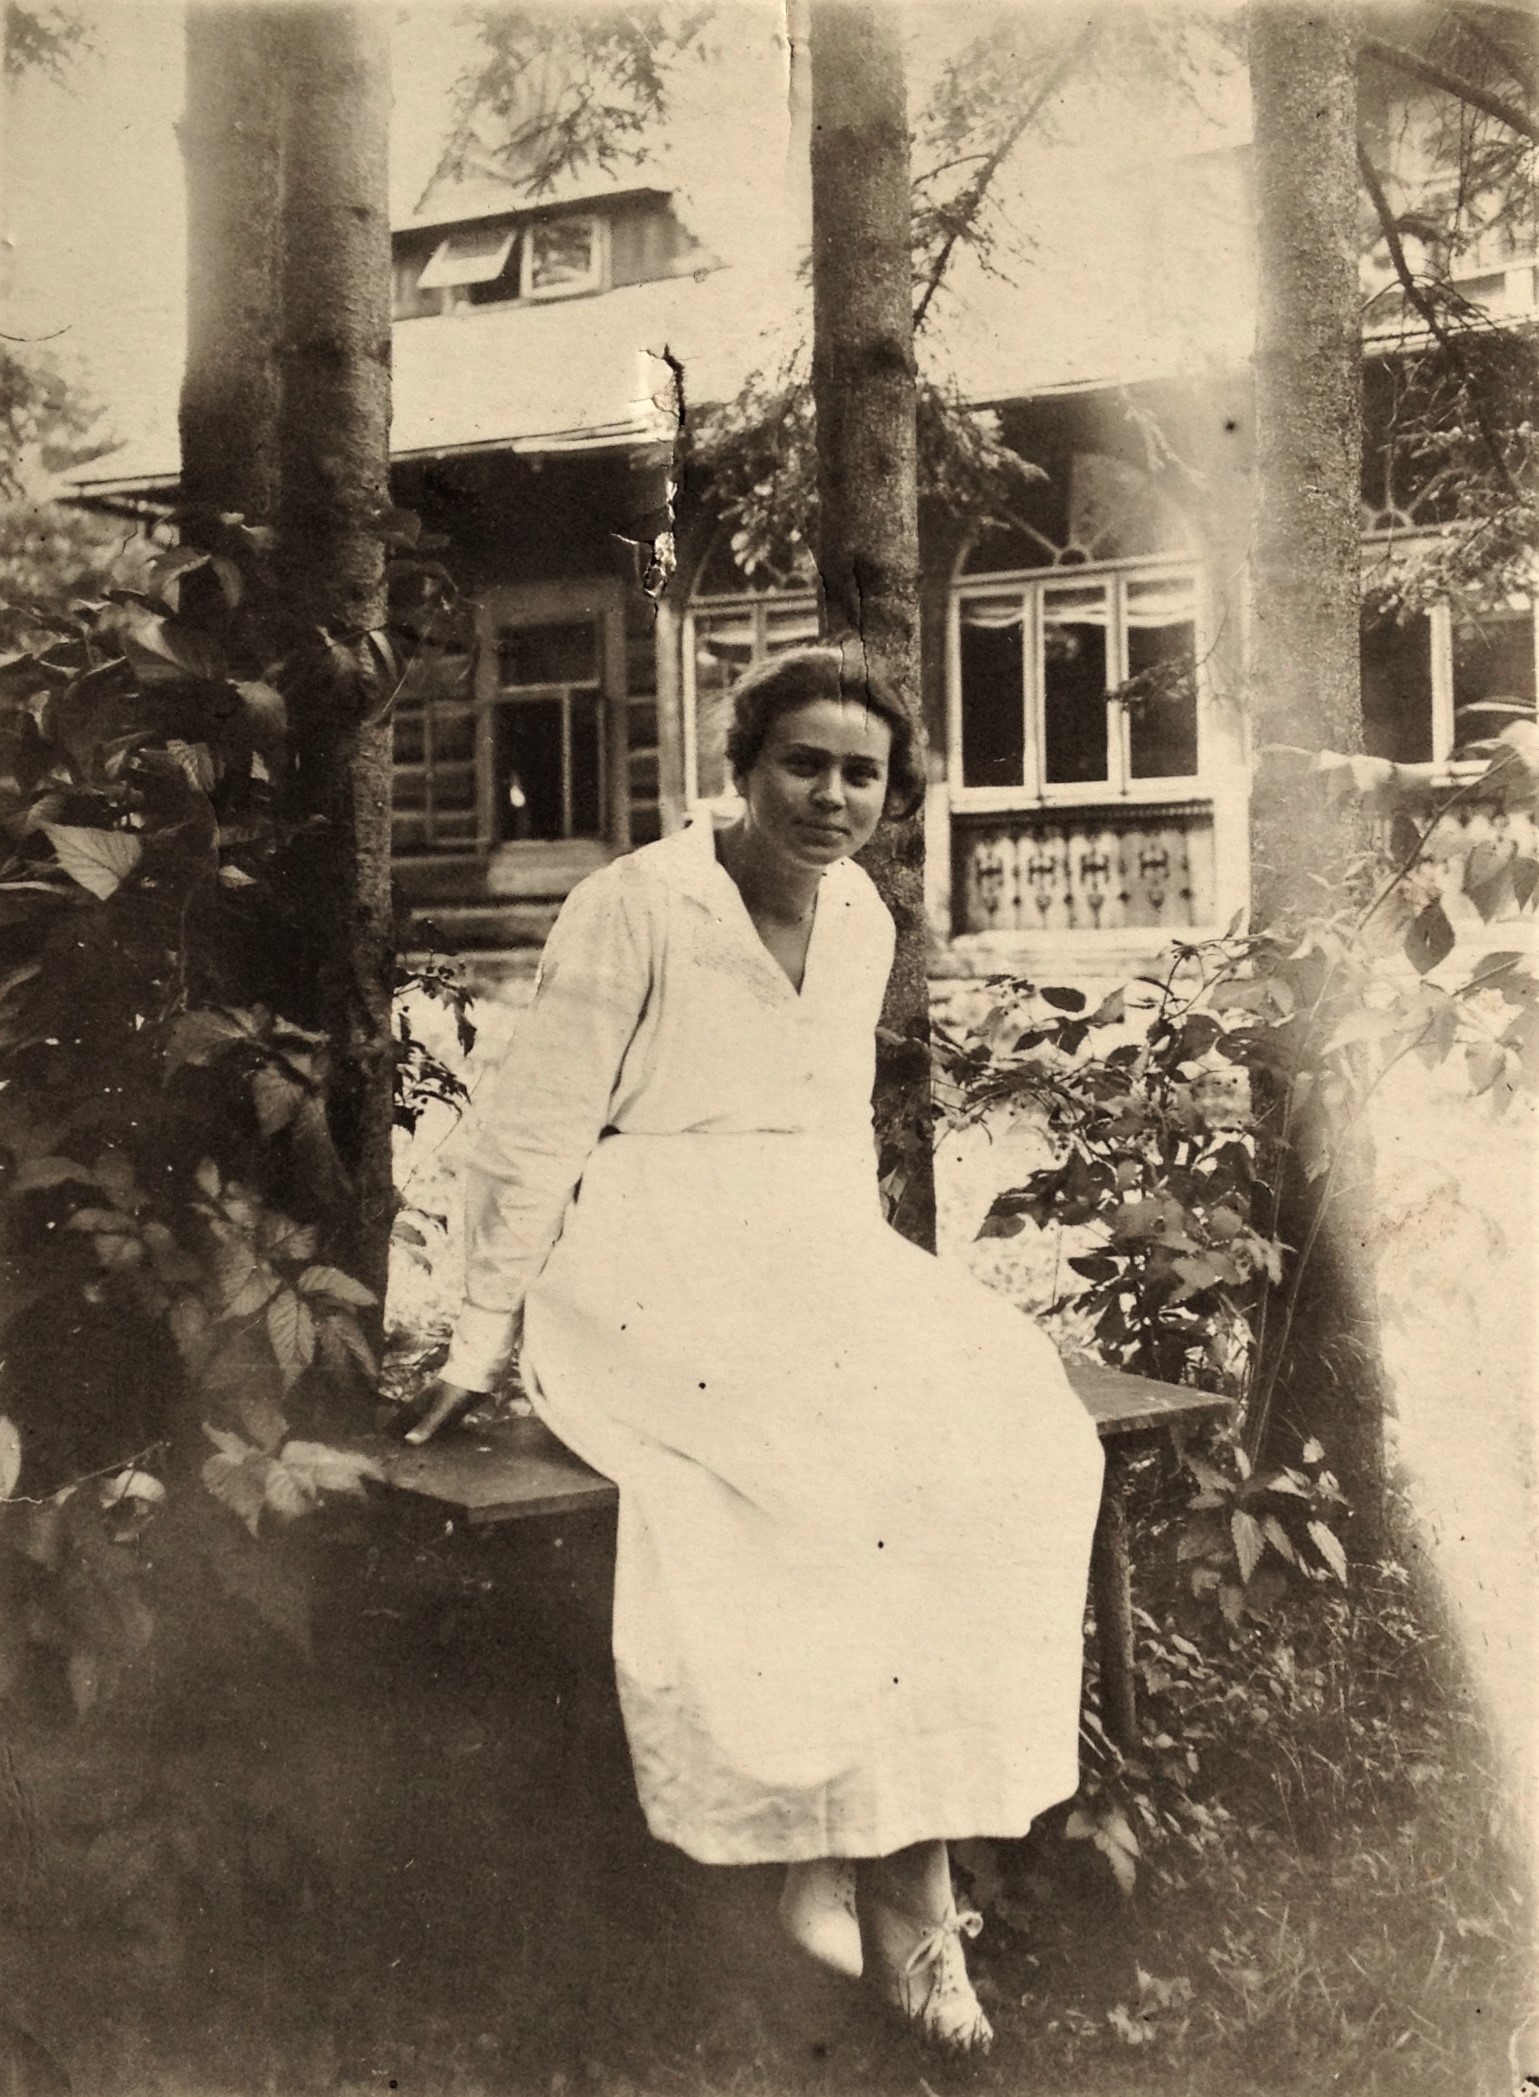 Fotografia czarno-biała. Przedstawia kobietę siedzącą na ławce. Z nią znajduje się drewniany dom